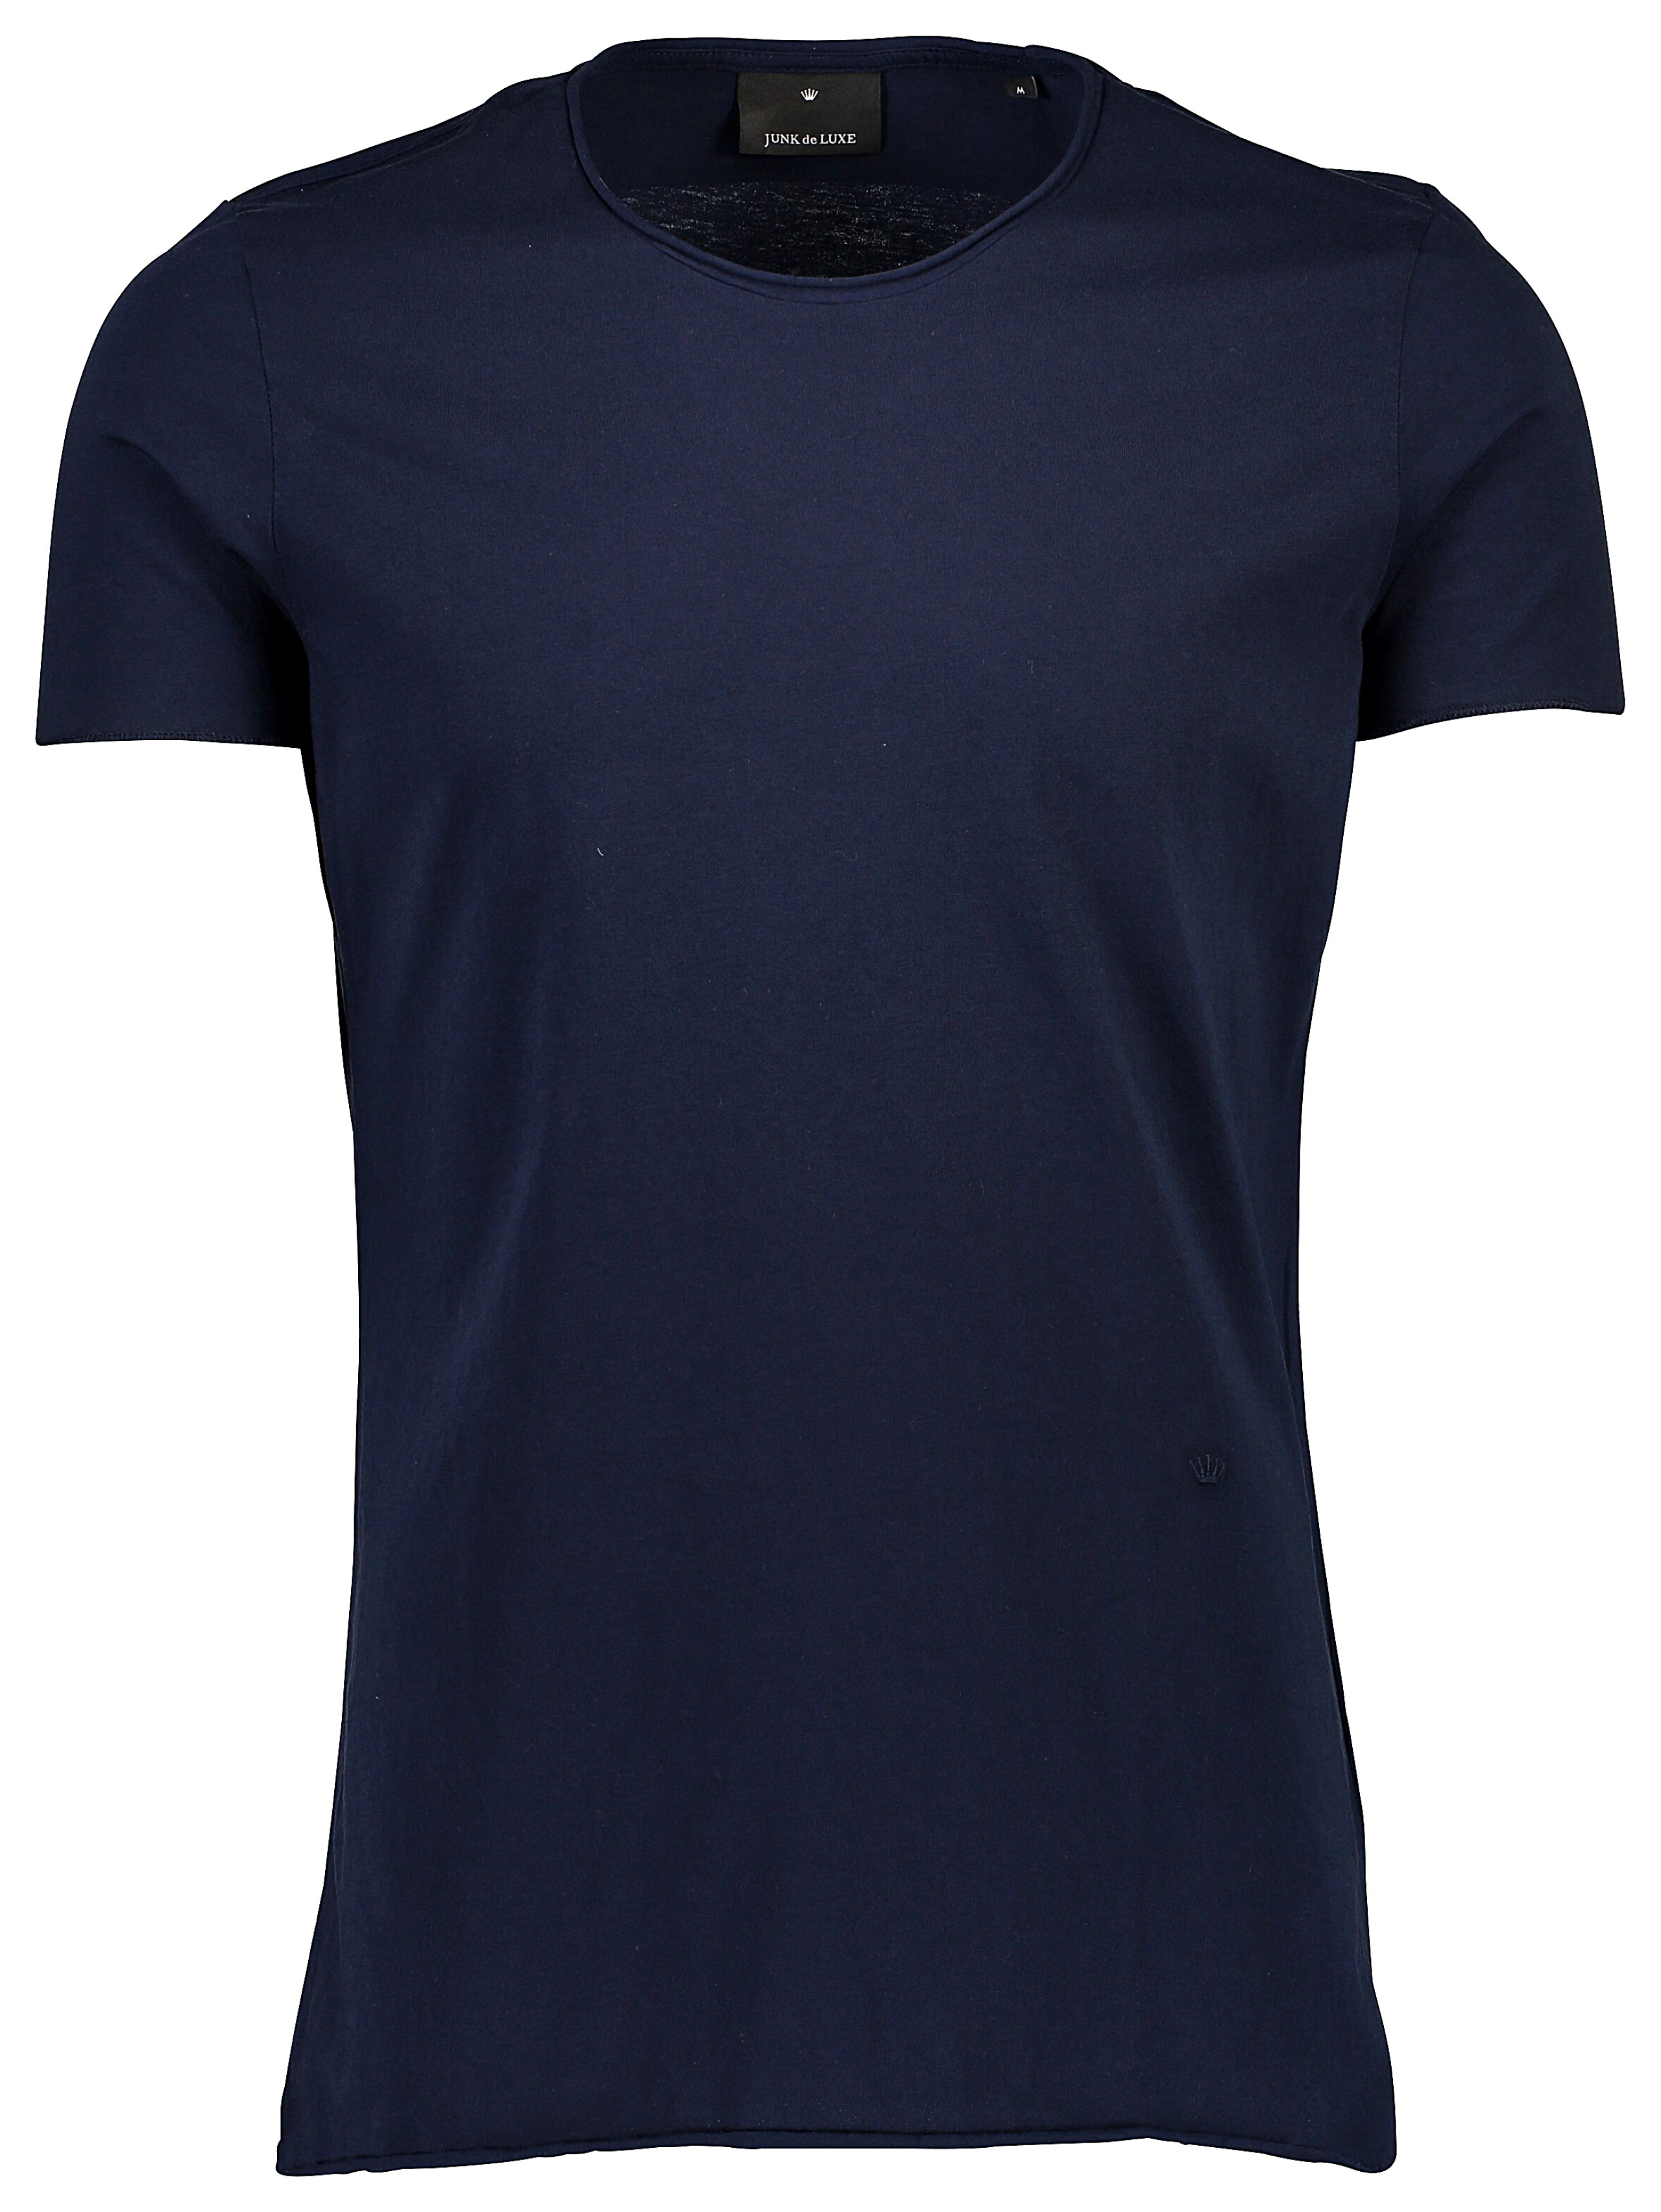 Junk de Luxe T-shirt blå / navy